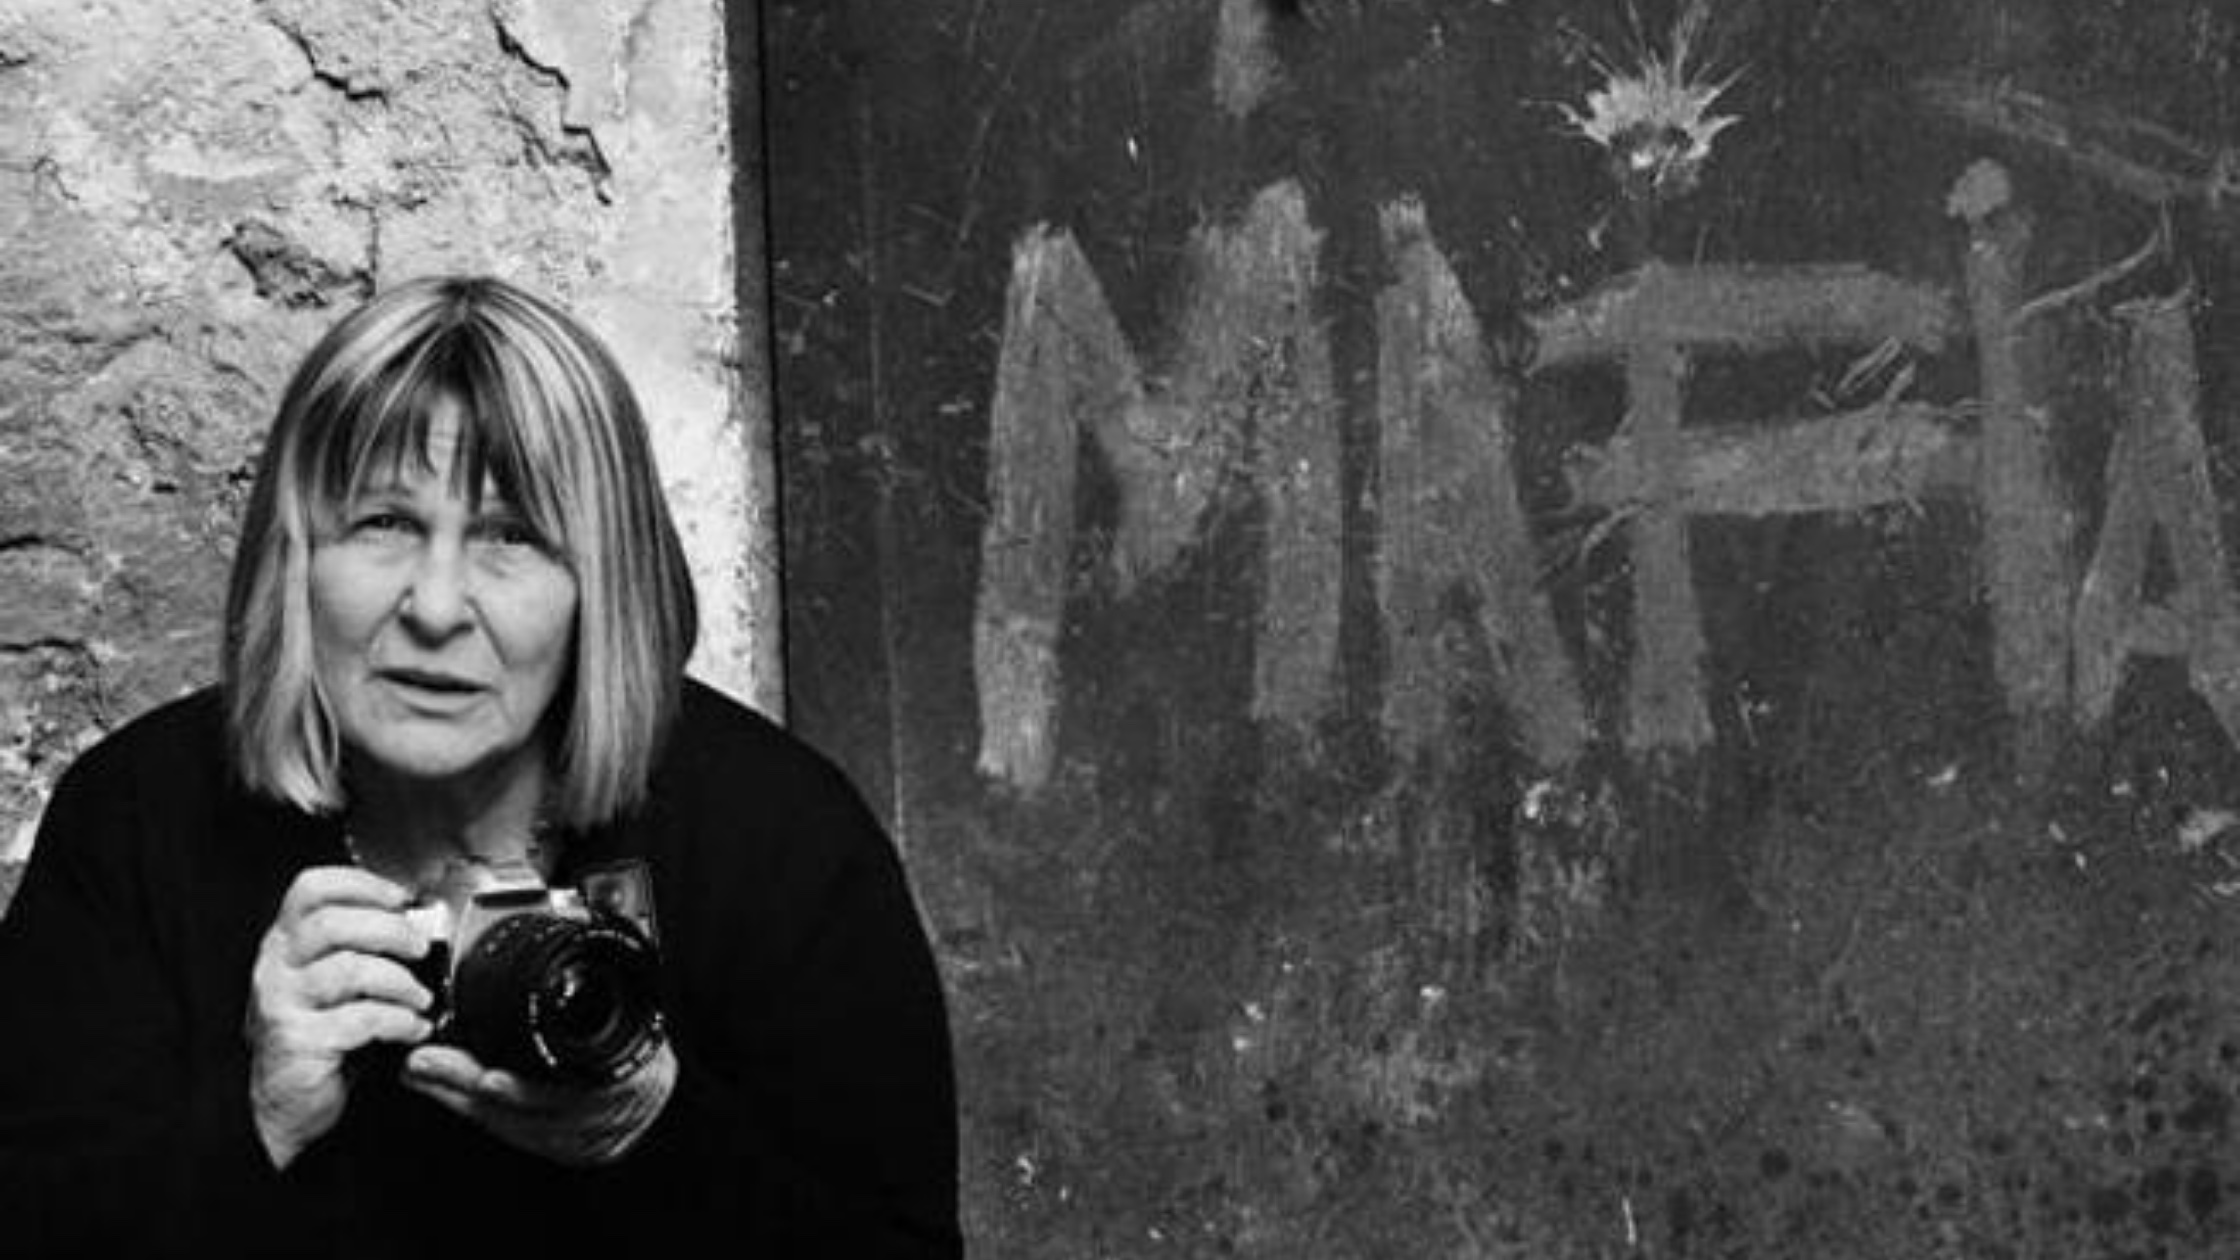 Letizia Battaglia: groundbreaking photojournalist who fearlessly documented the Mafia in her native Sicily